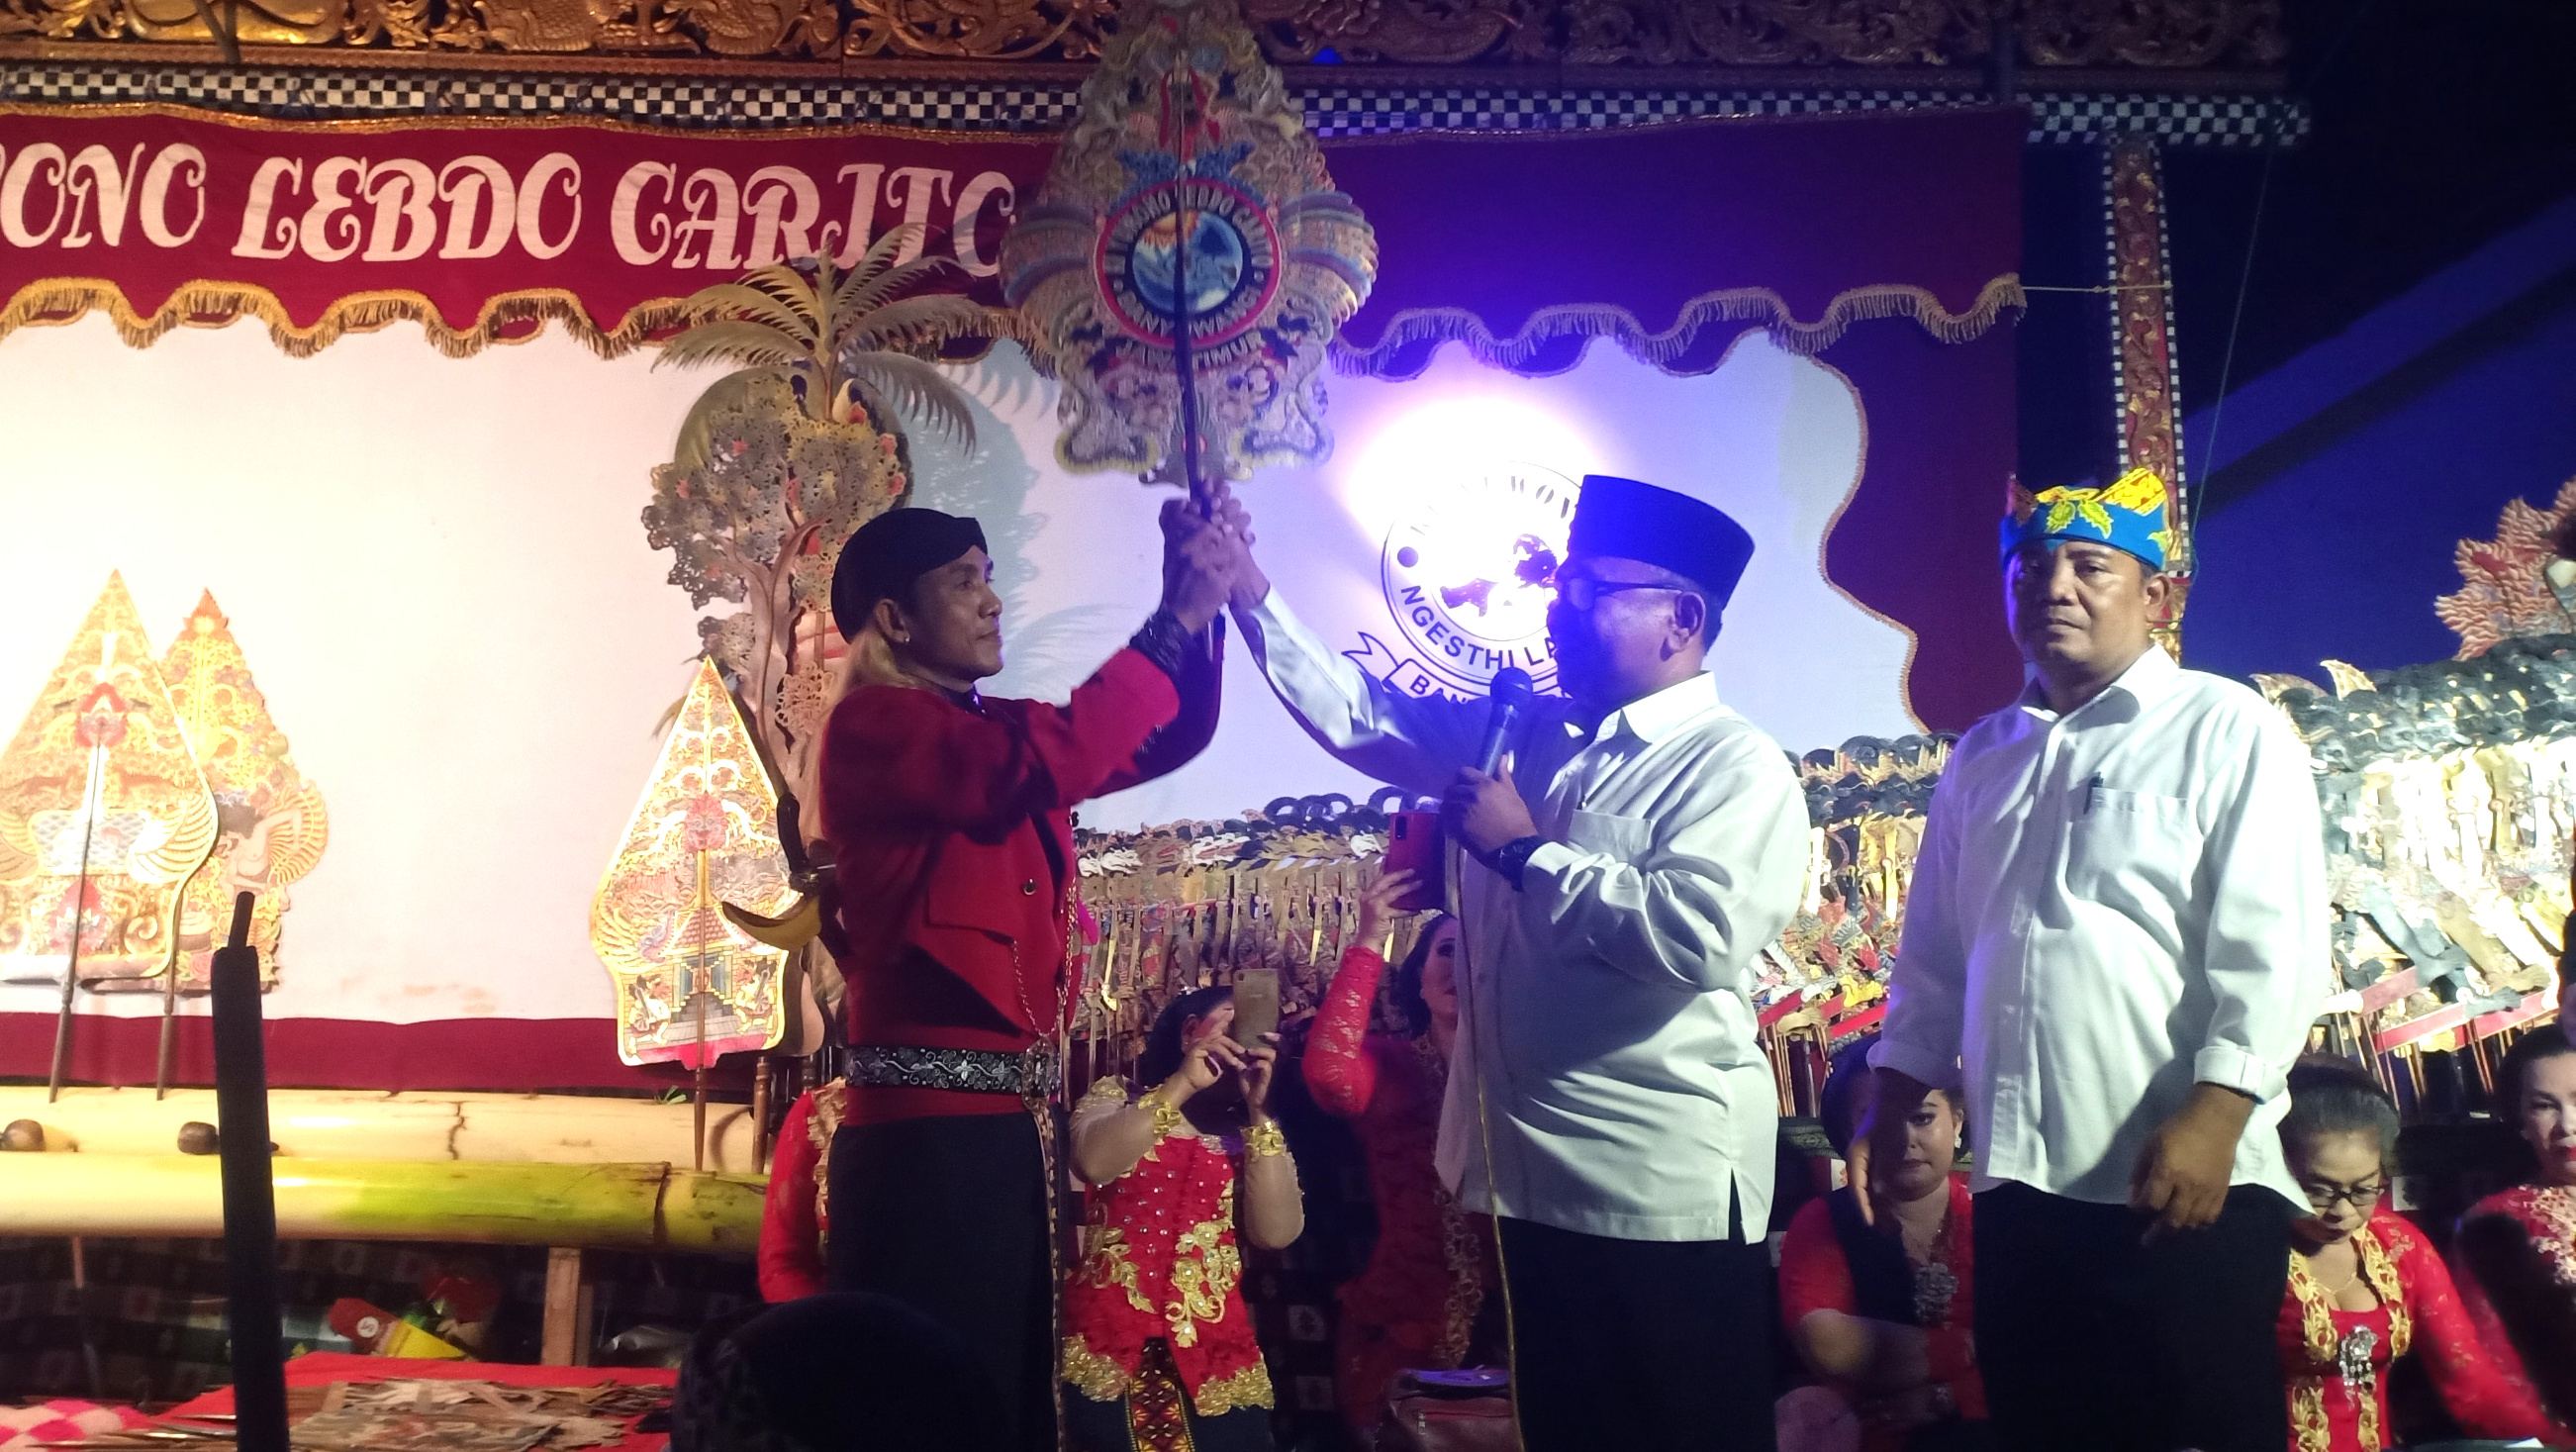 Nonton Wayang Kulit, Wabup Banyuwangi Ajak Jaga Warisan Budaya